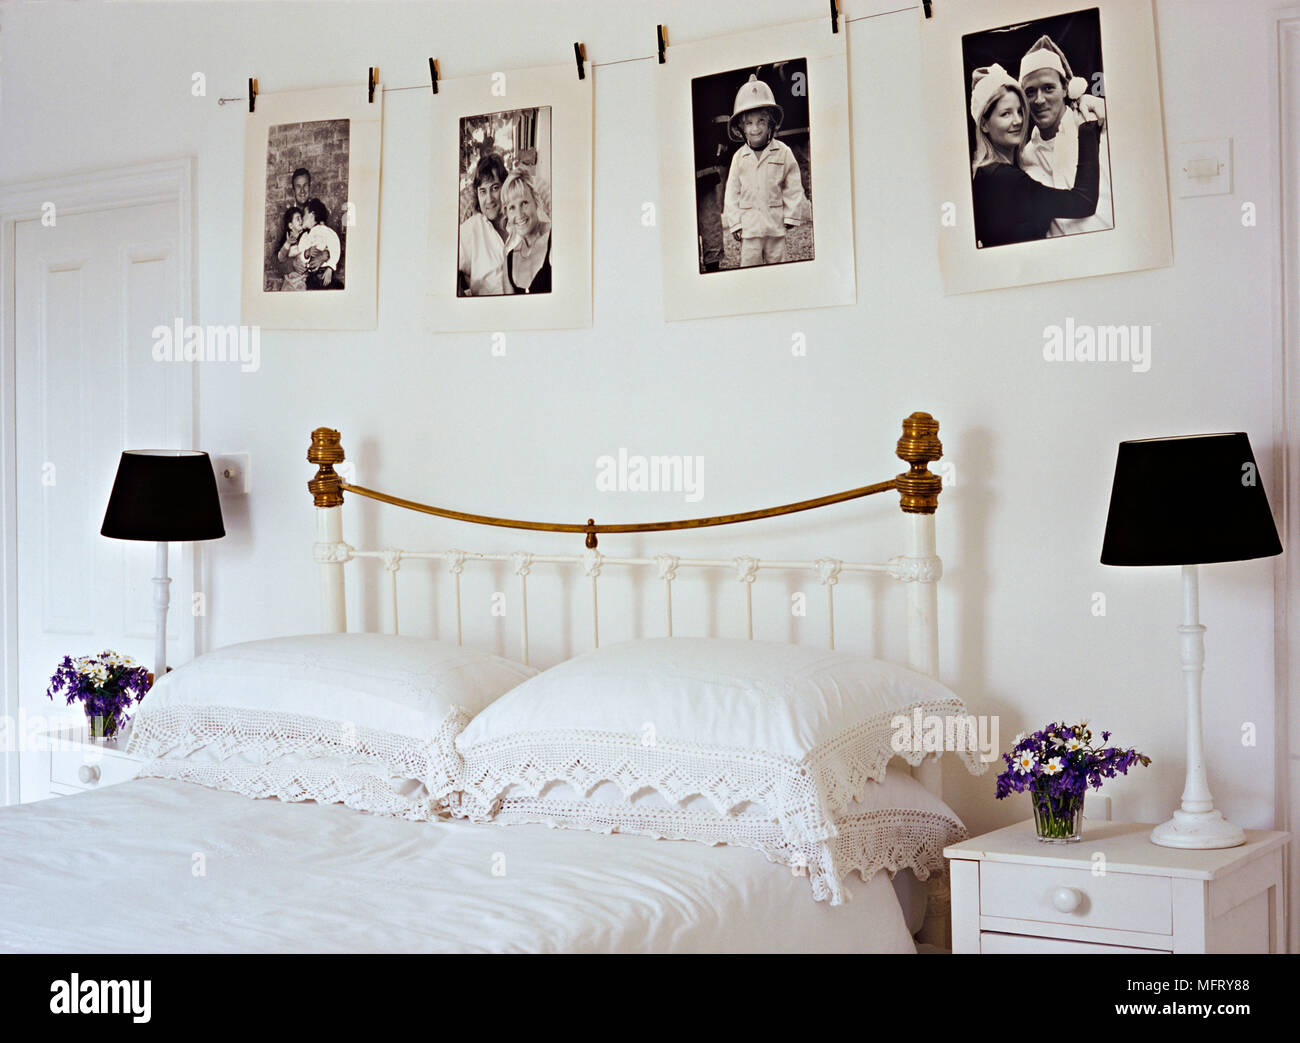 Un détail d'une chambre avec un neutre traditionnel en fer forgé peint et laiton avec lampes de chevet de lit Banque D'Images